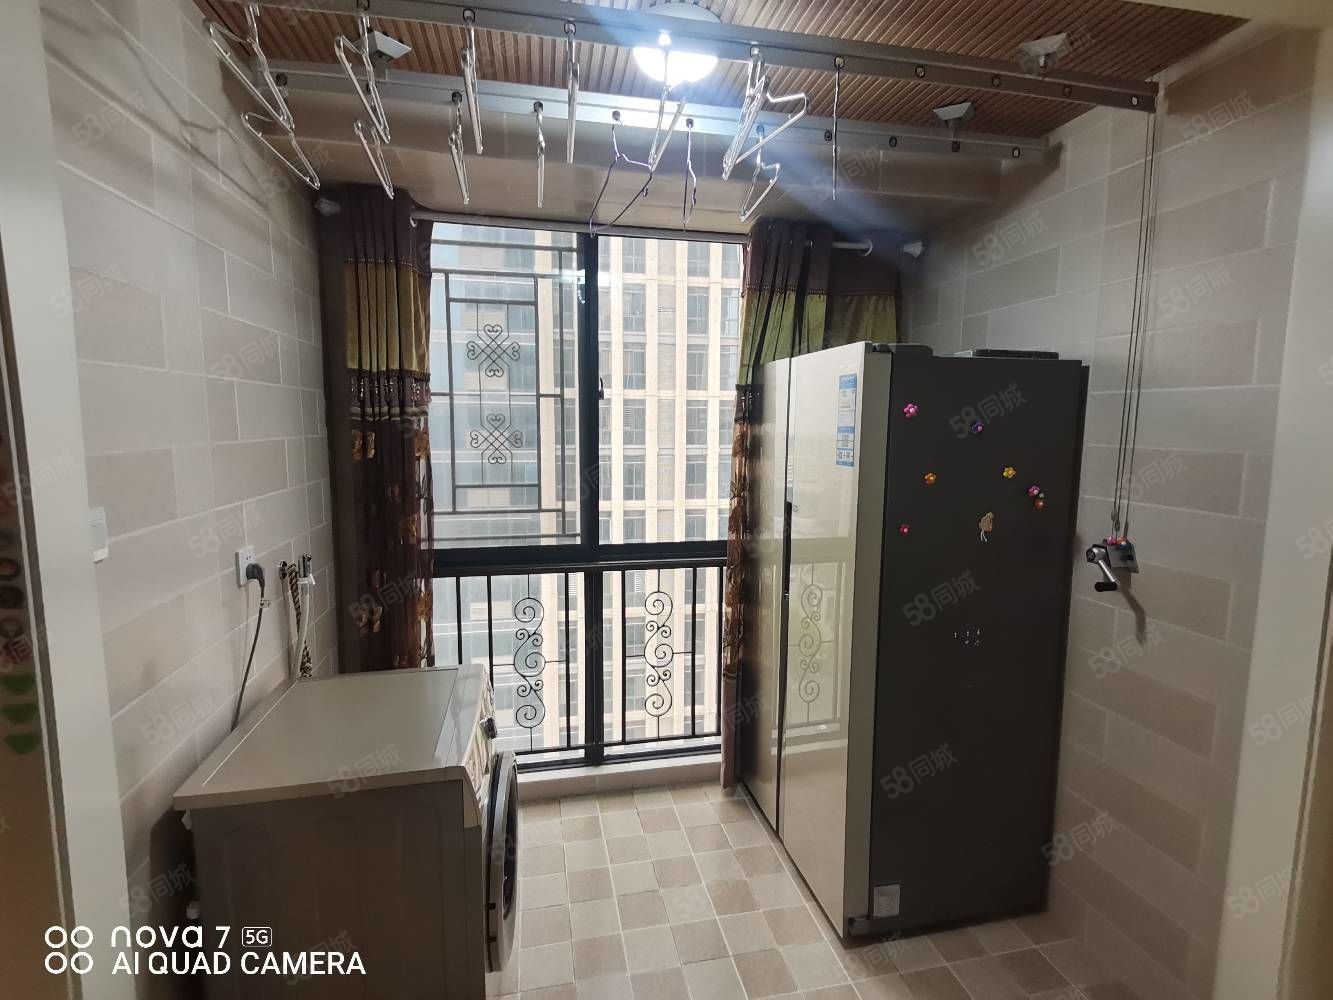 吾悦广场附近两室精装电梯房拎包入住带暖气